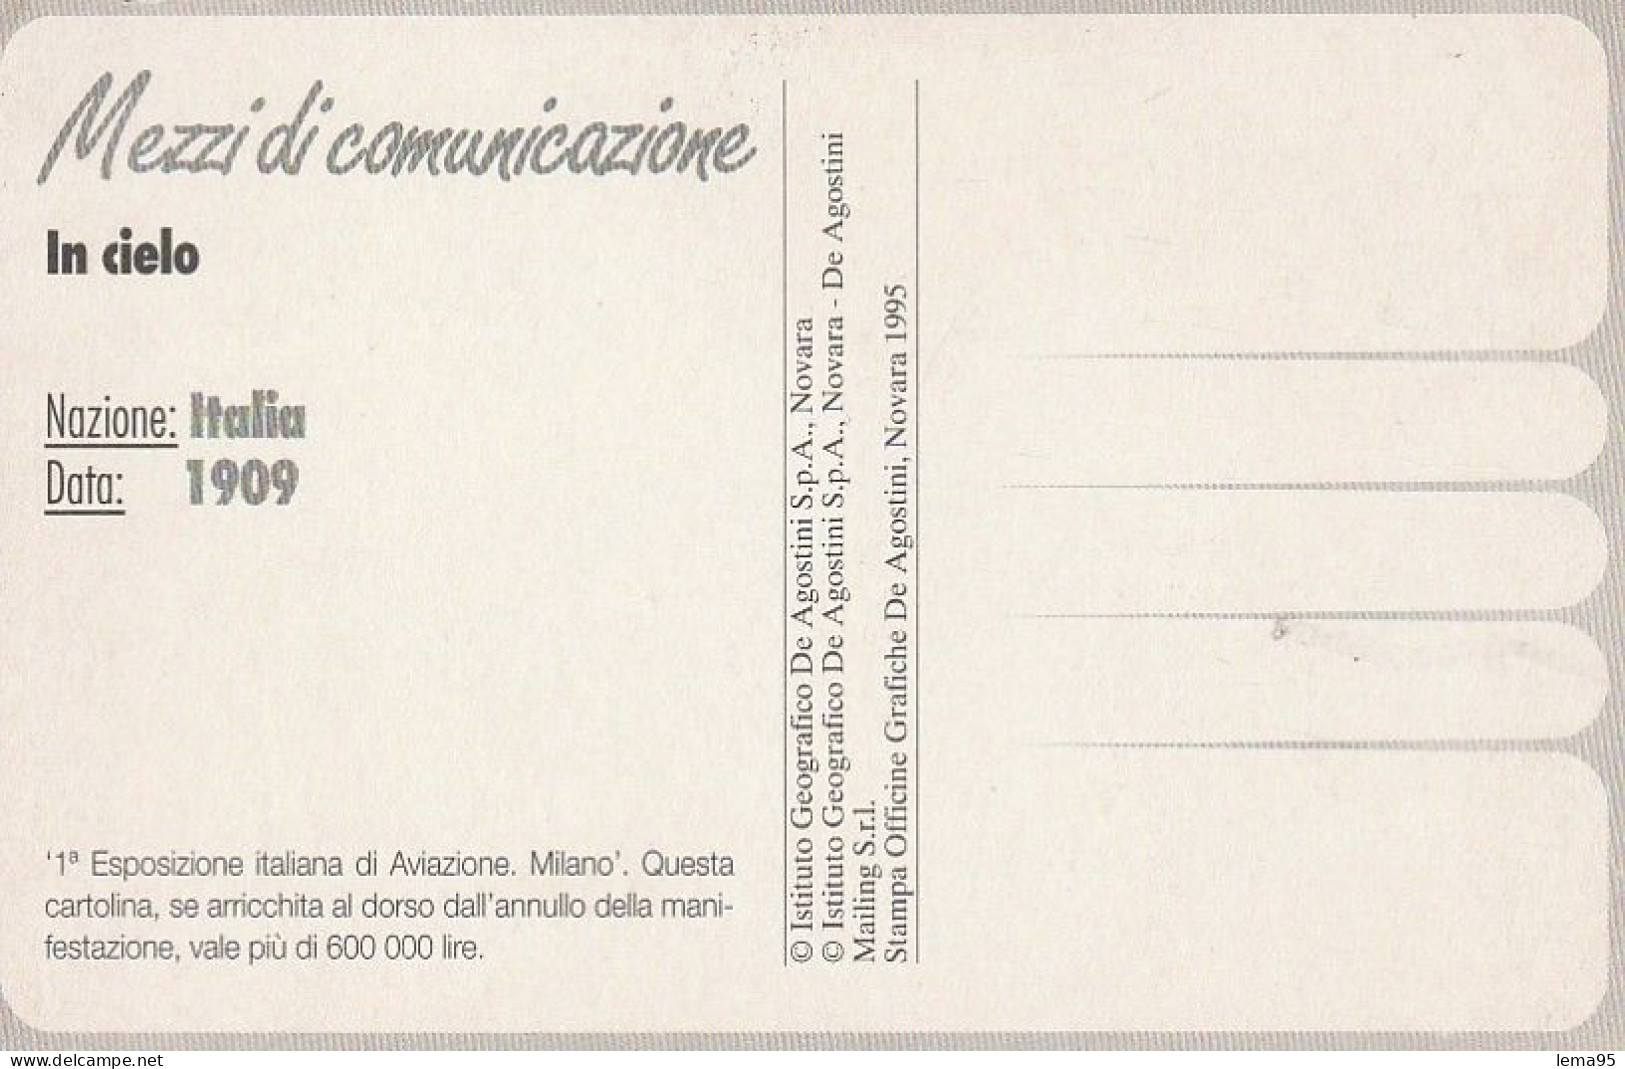 MILANO 1909 1 ESPOSIZIONE ITALIANA DI AVIAZIONE FORMATO PICCOLO - Advertising